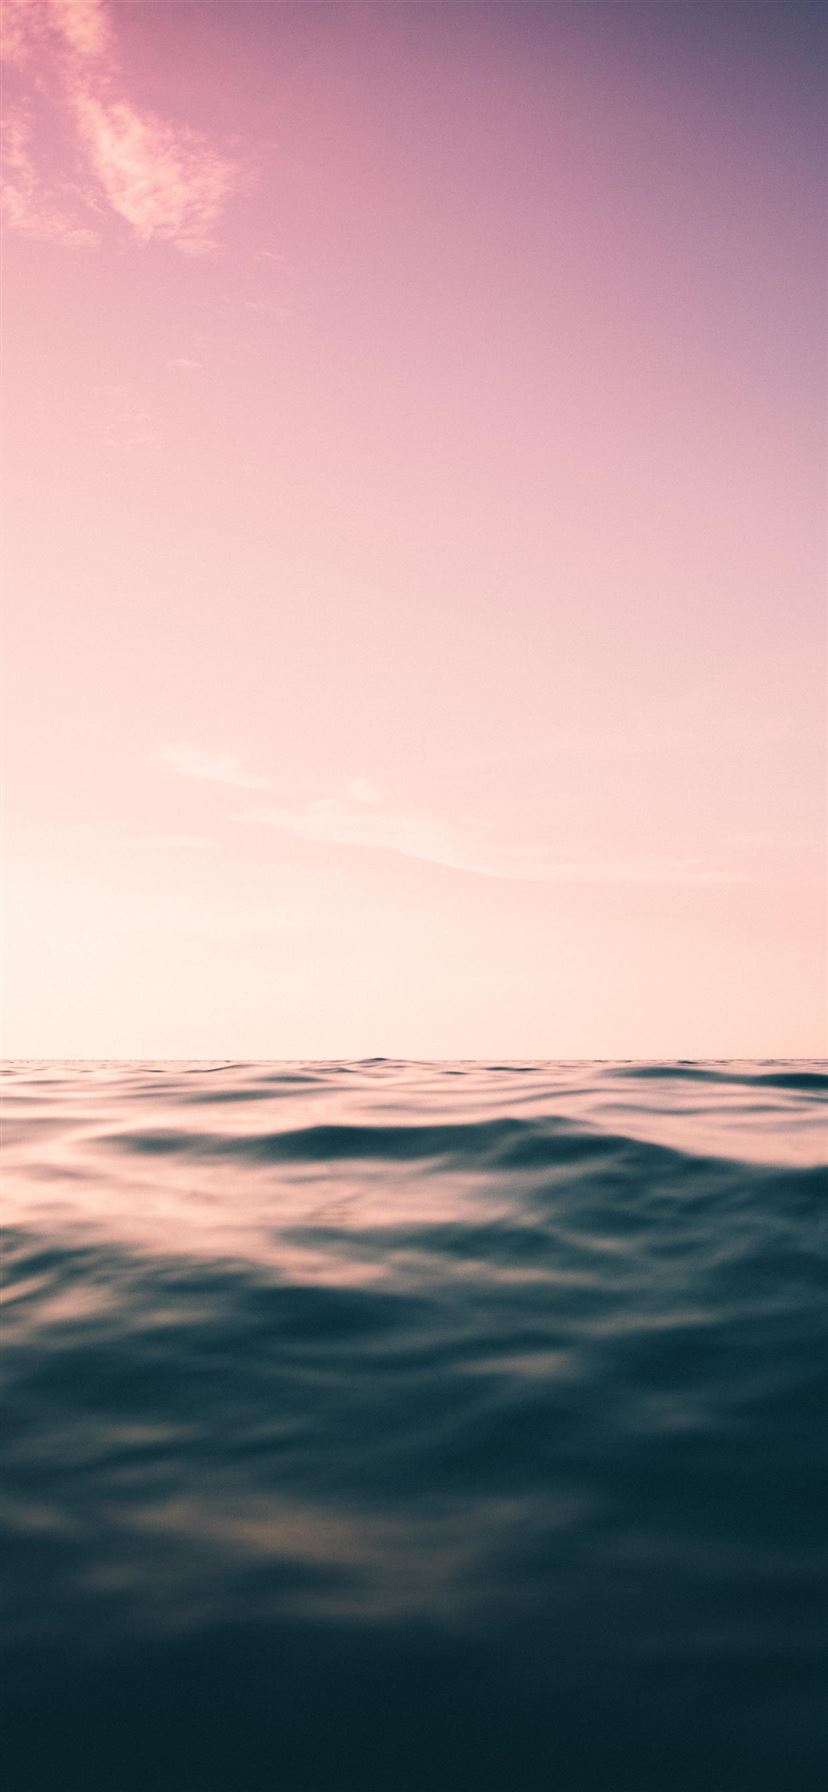 purple skies and ocean iPhone 11 Wallpapers Free Download